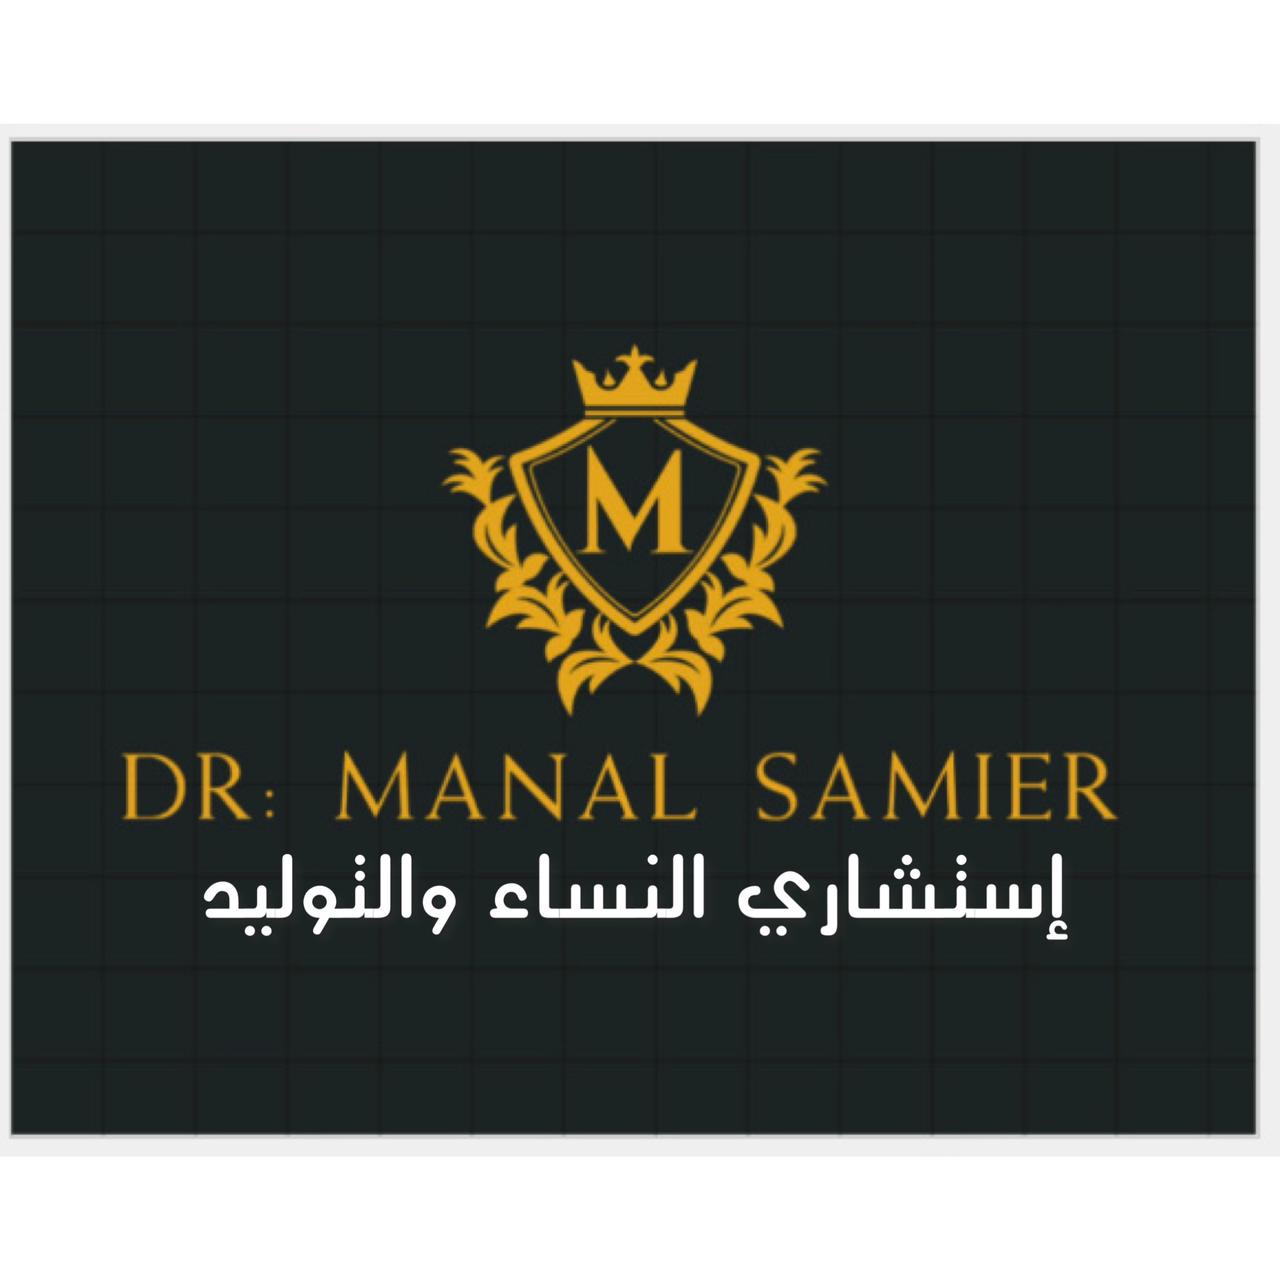 Dr. Manal Samir